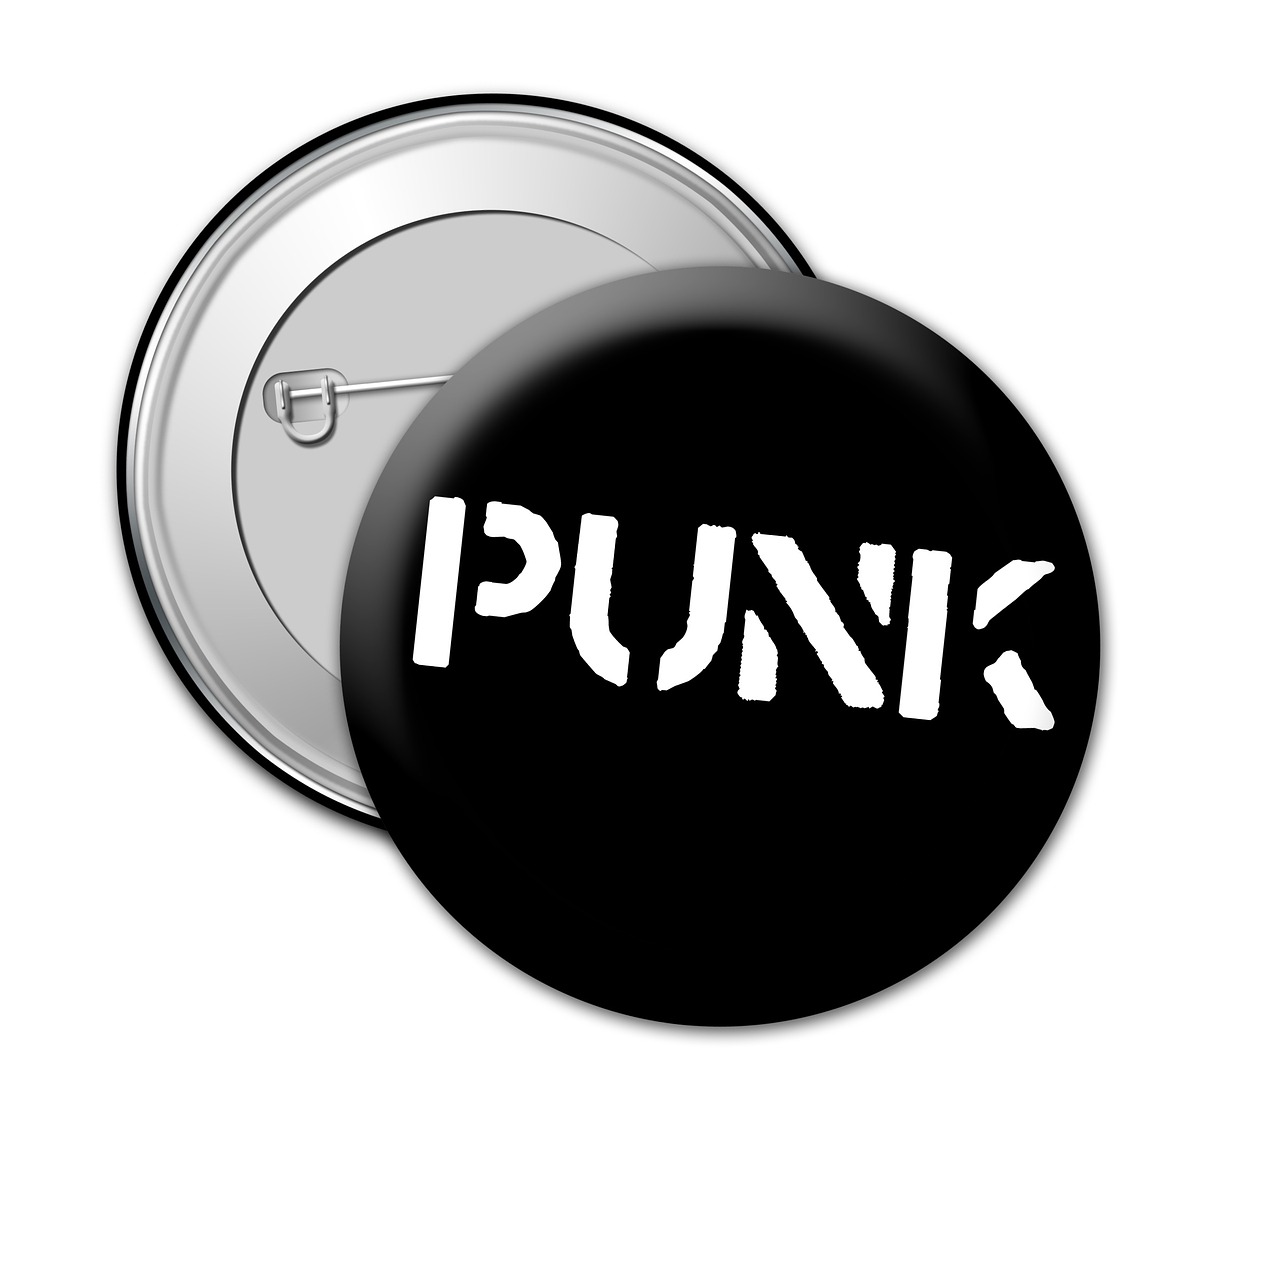 punk rock music free photo